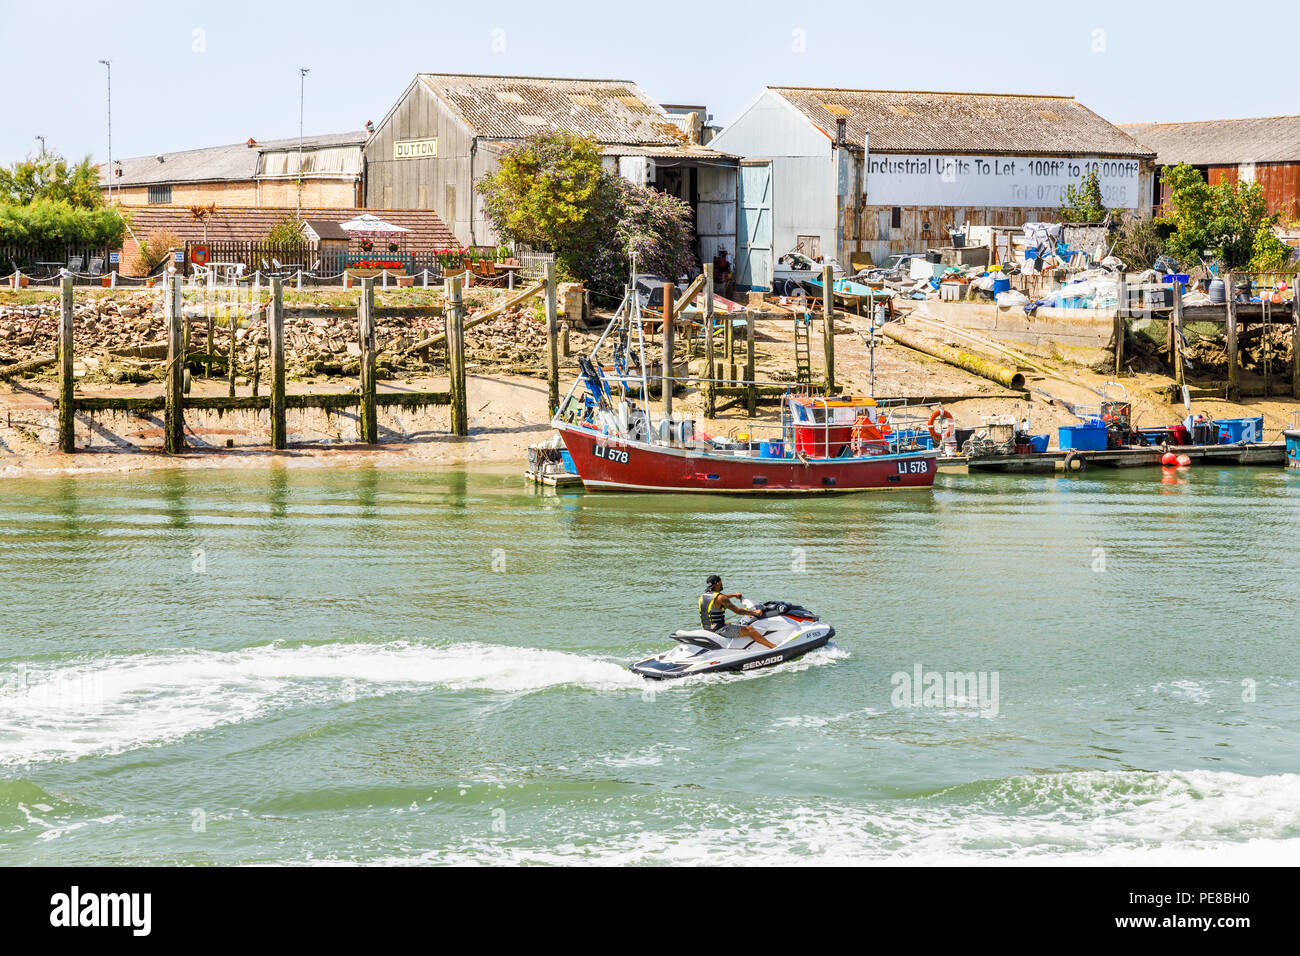 Par Jetski bateaux de pêche amarrés à des unités industrielles sur la rive sur la plage ouest de la rivière Arun estuaire, Littlehampton, West Sussex, UK Banque D'Images